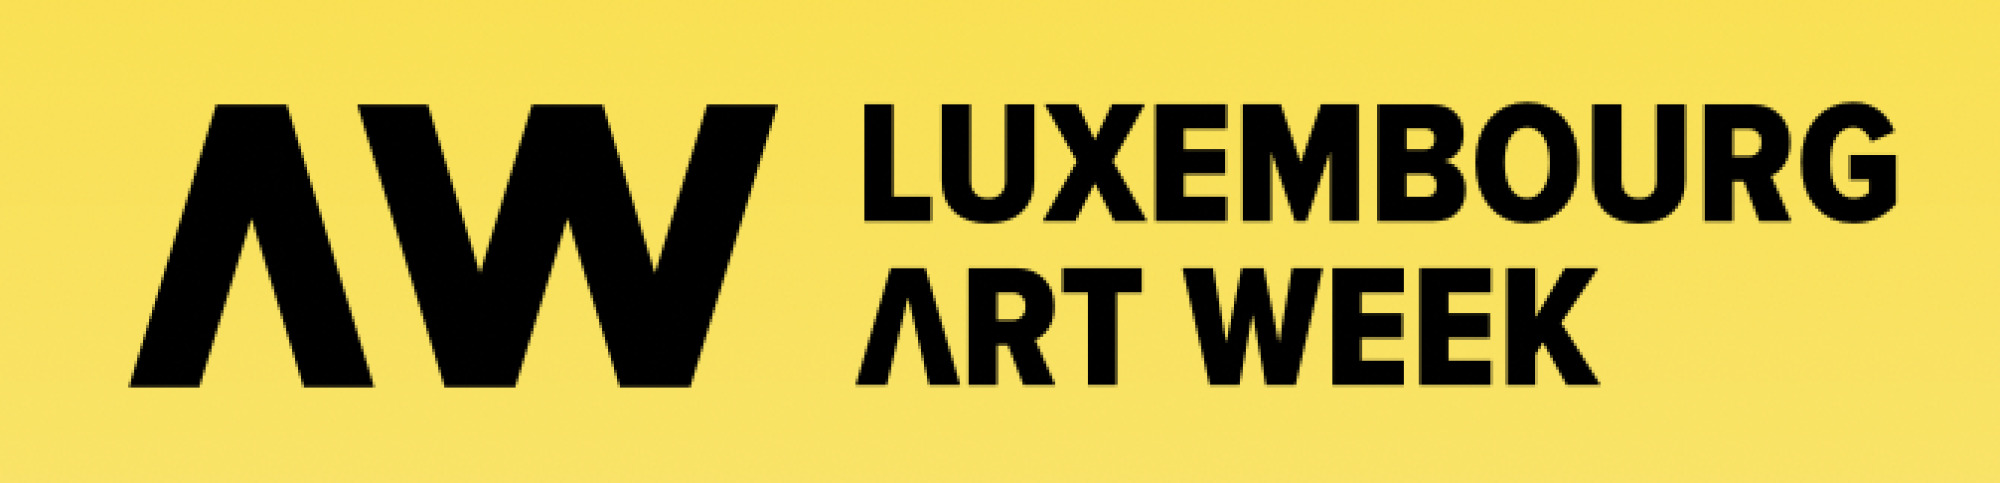 Luxembourg Art week 